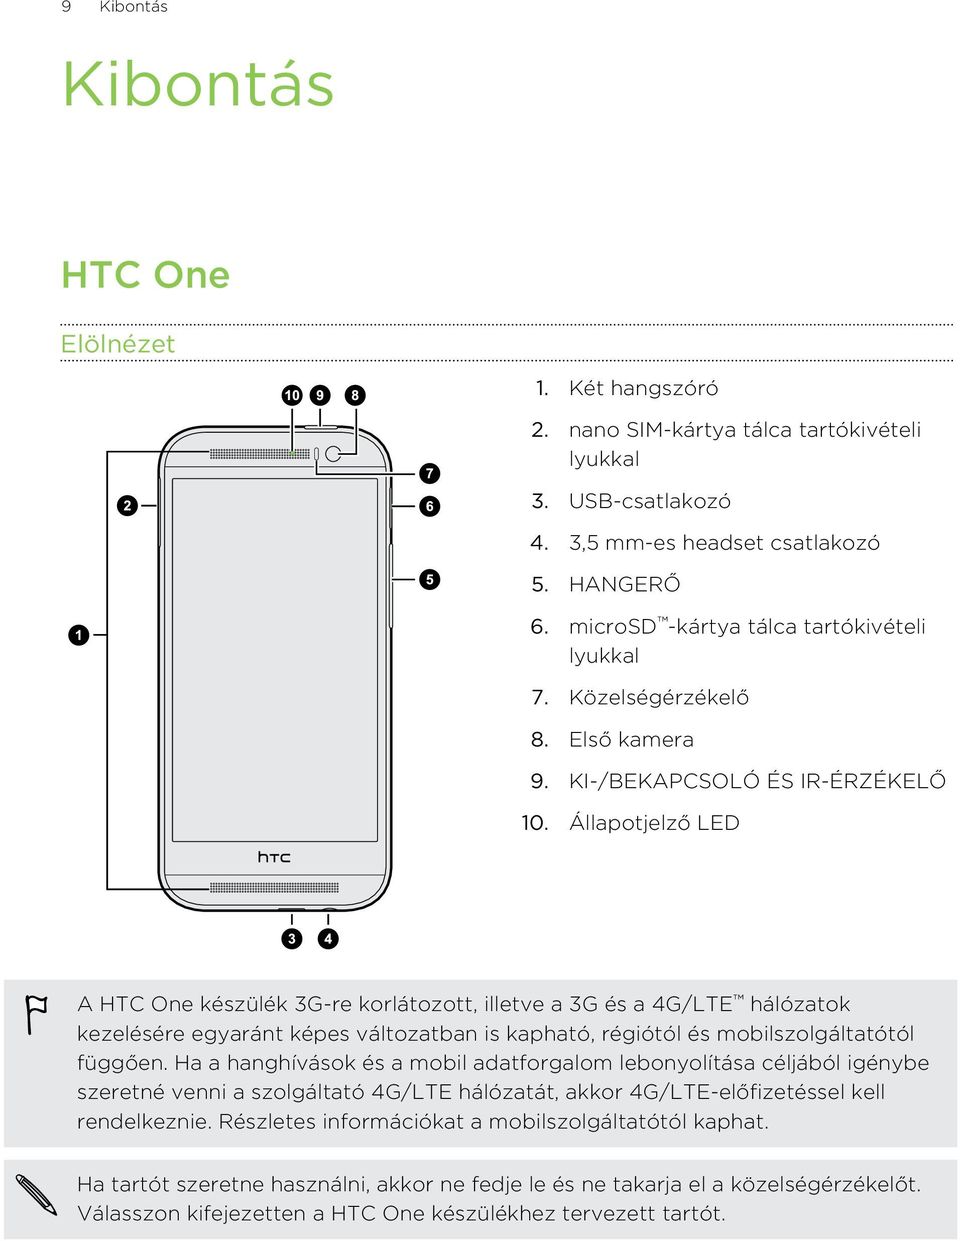 Állapotjelző LED A HTC One készülék 3G-re korlátozott, illetve a 3G és a 4G/LTE hálózatok kezelésére egyaránt képes változatban is kapható, régiótól és mobilszolgáltatótól függően.